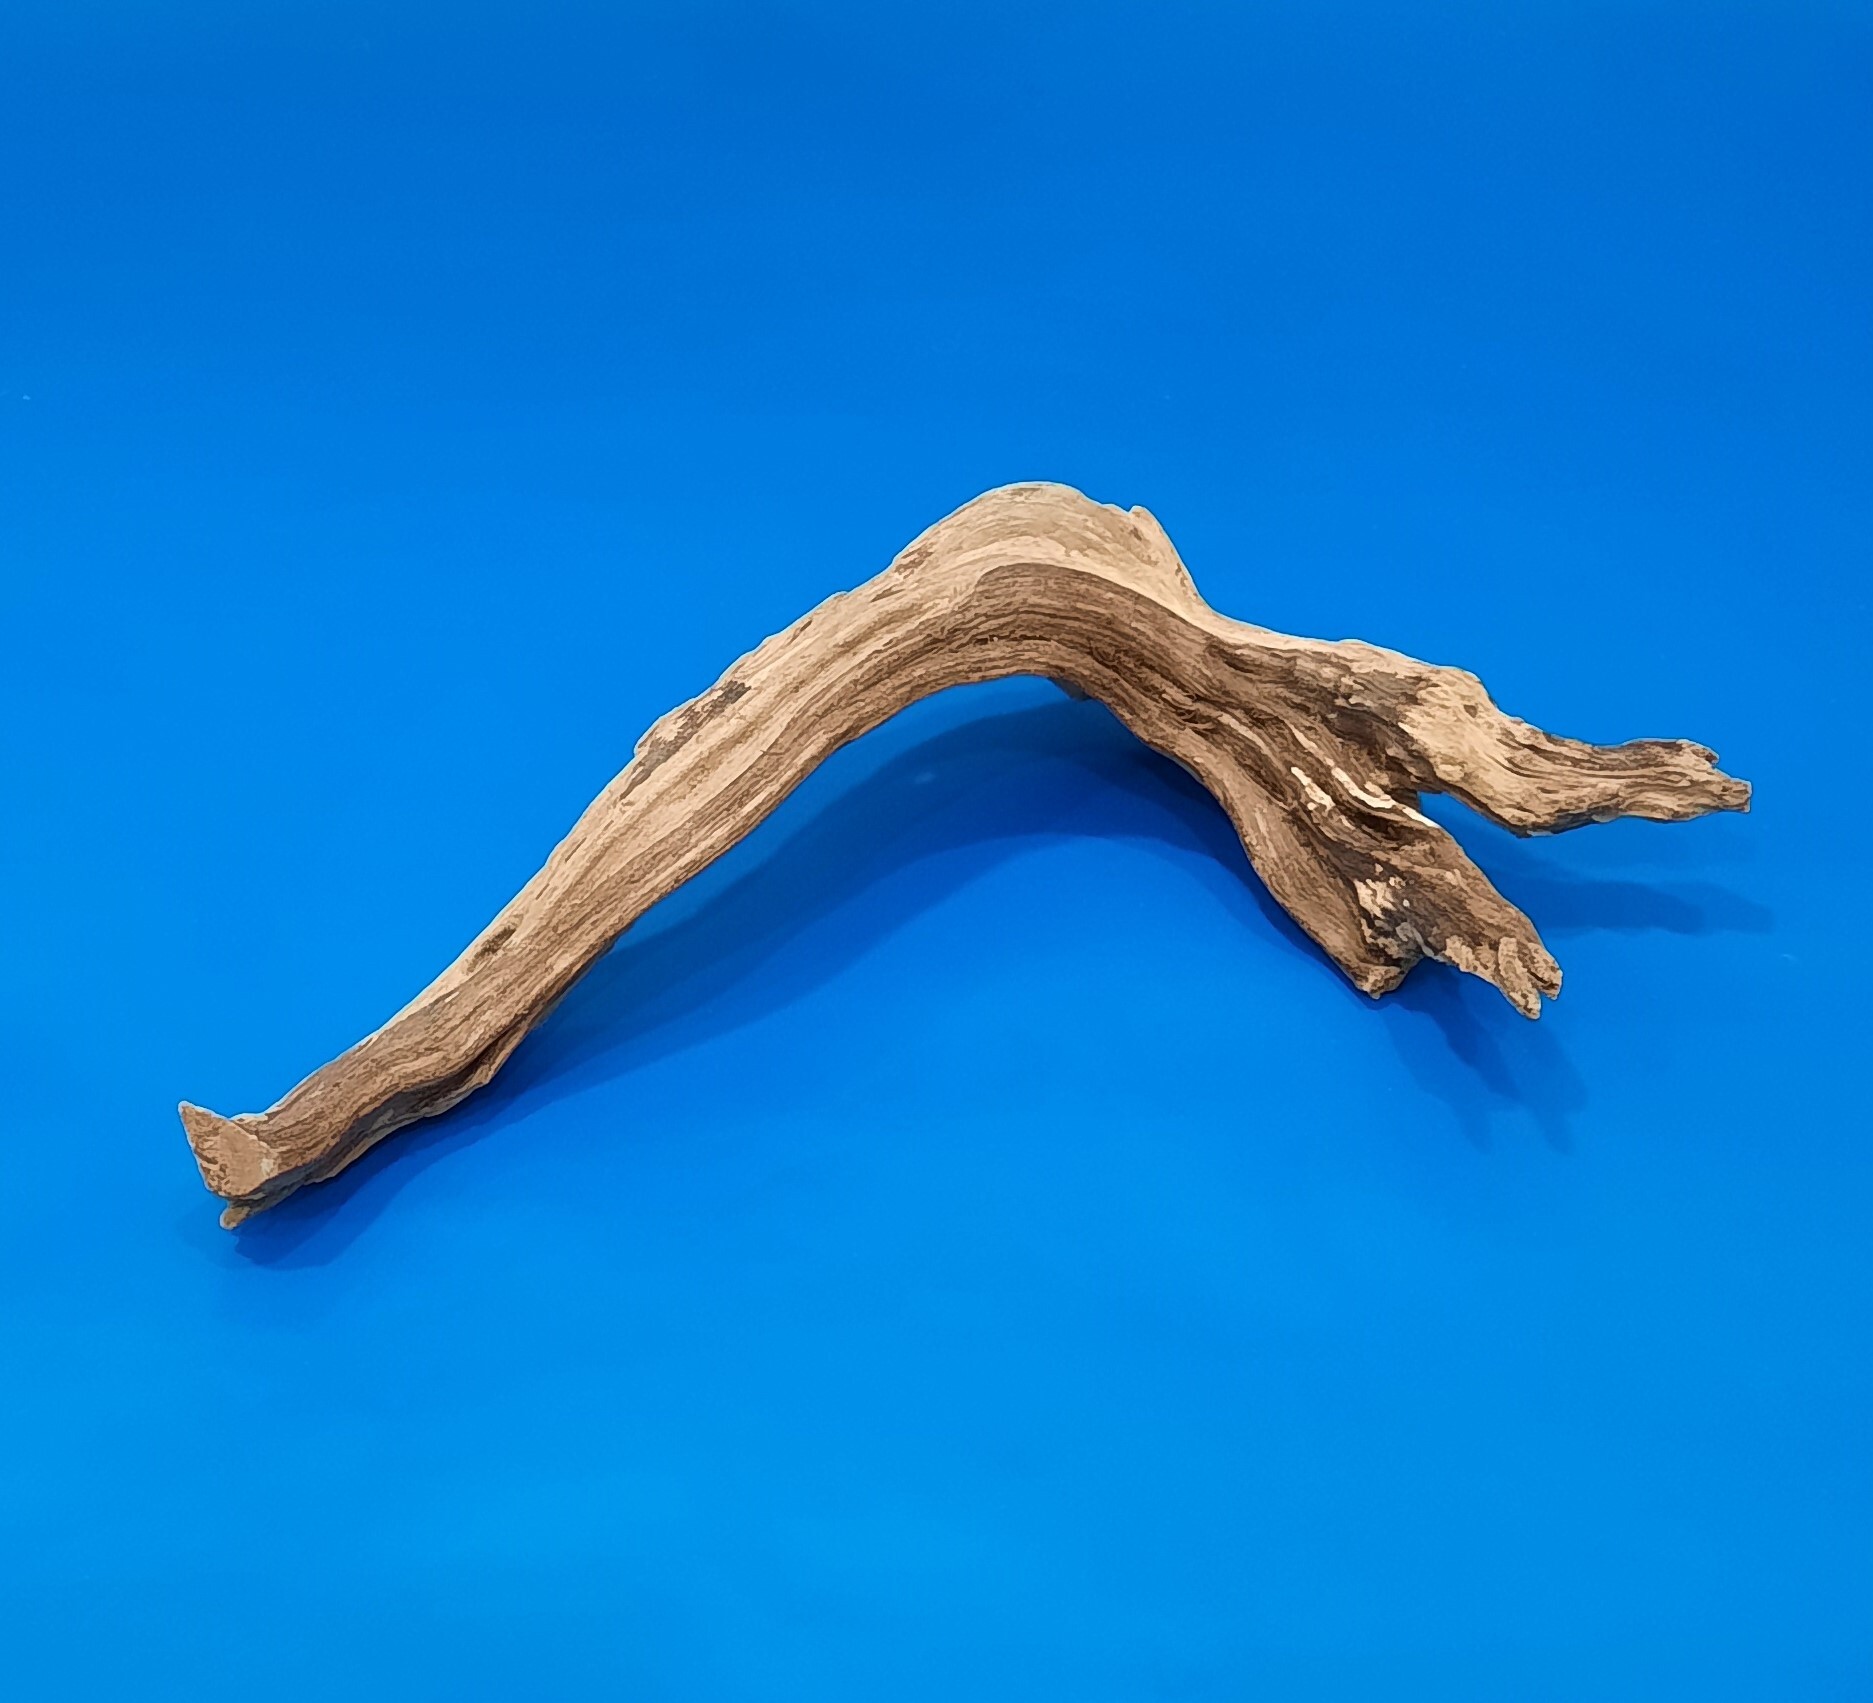 VLADOX коряга "корень Азалии" Azalea Wood 40-70 см. Коряга для аквариума натуральная. Натуральные коряги